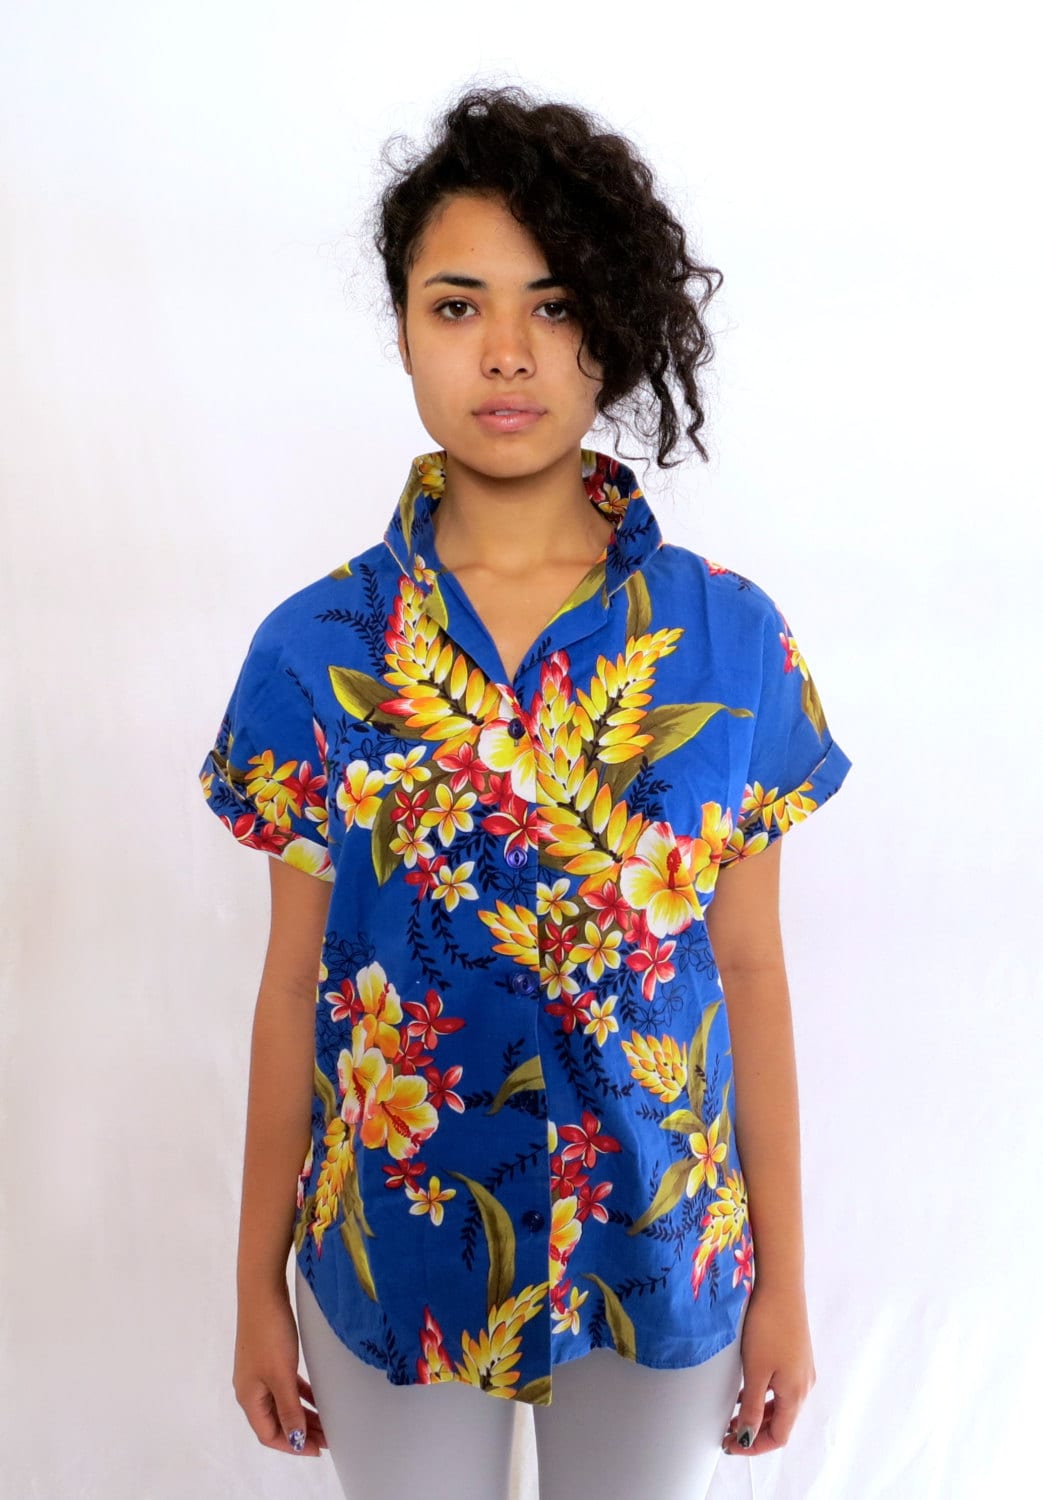 Blue and Yellow Vintage Hawaiian Print Tshirt Blouse - Etsy